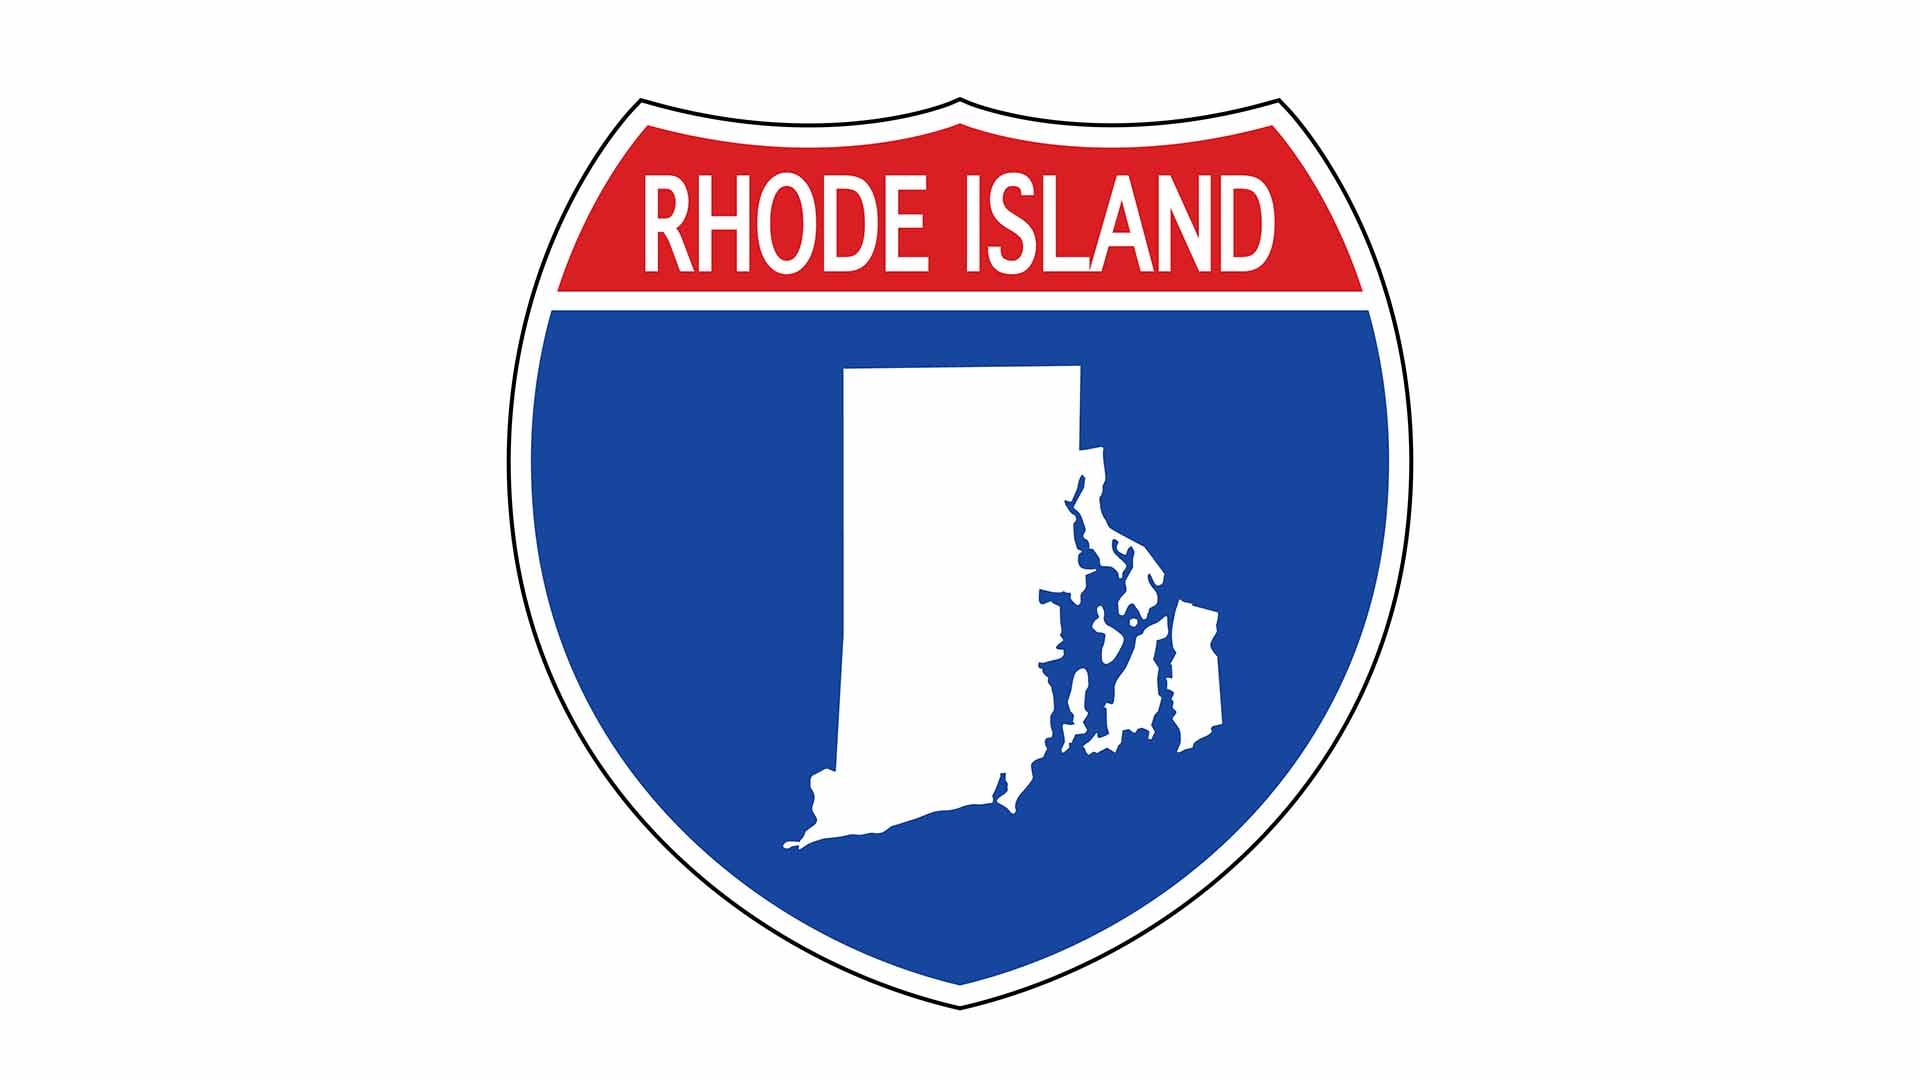 Rhode Island state roadside sign